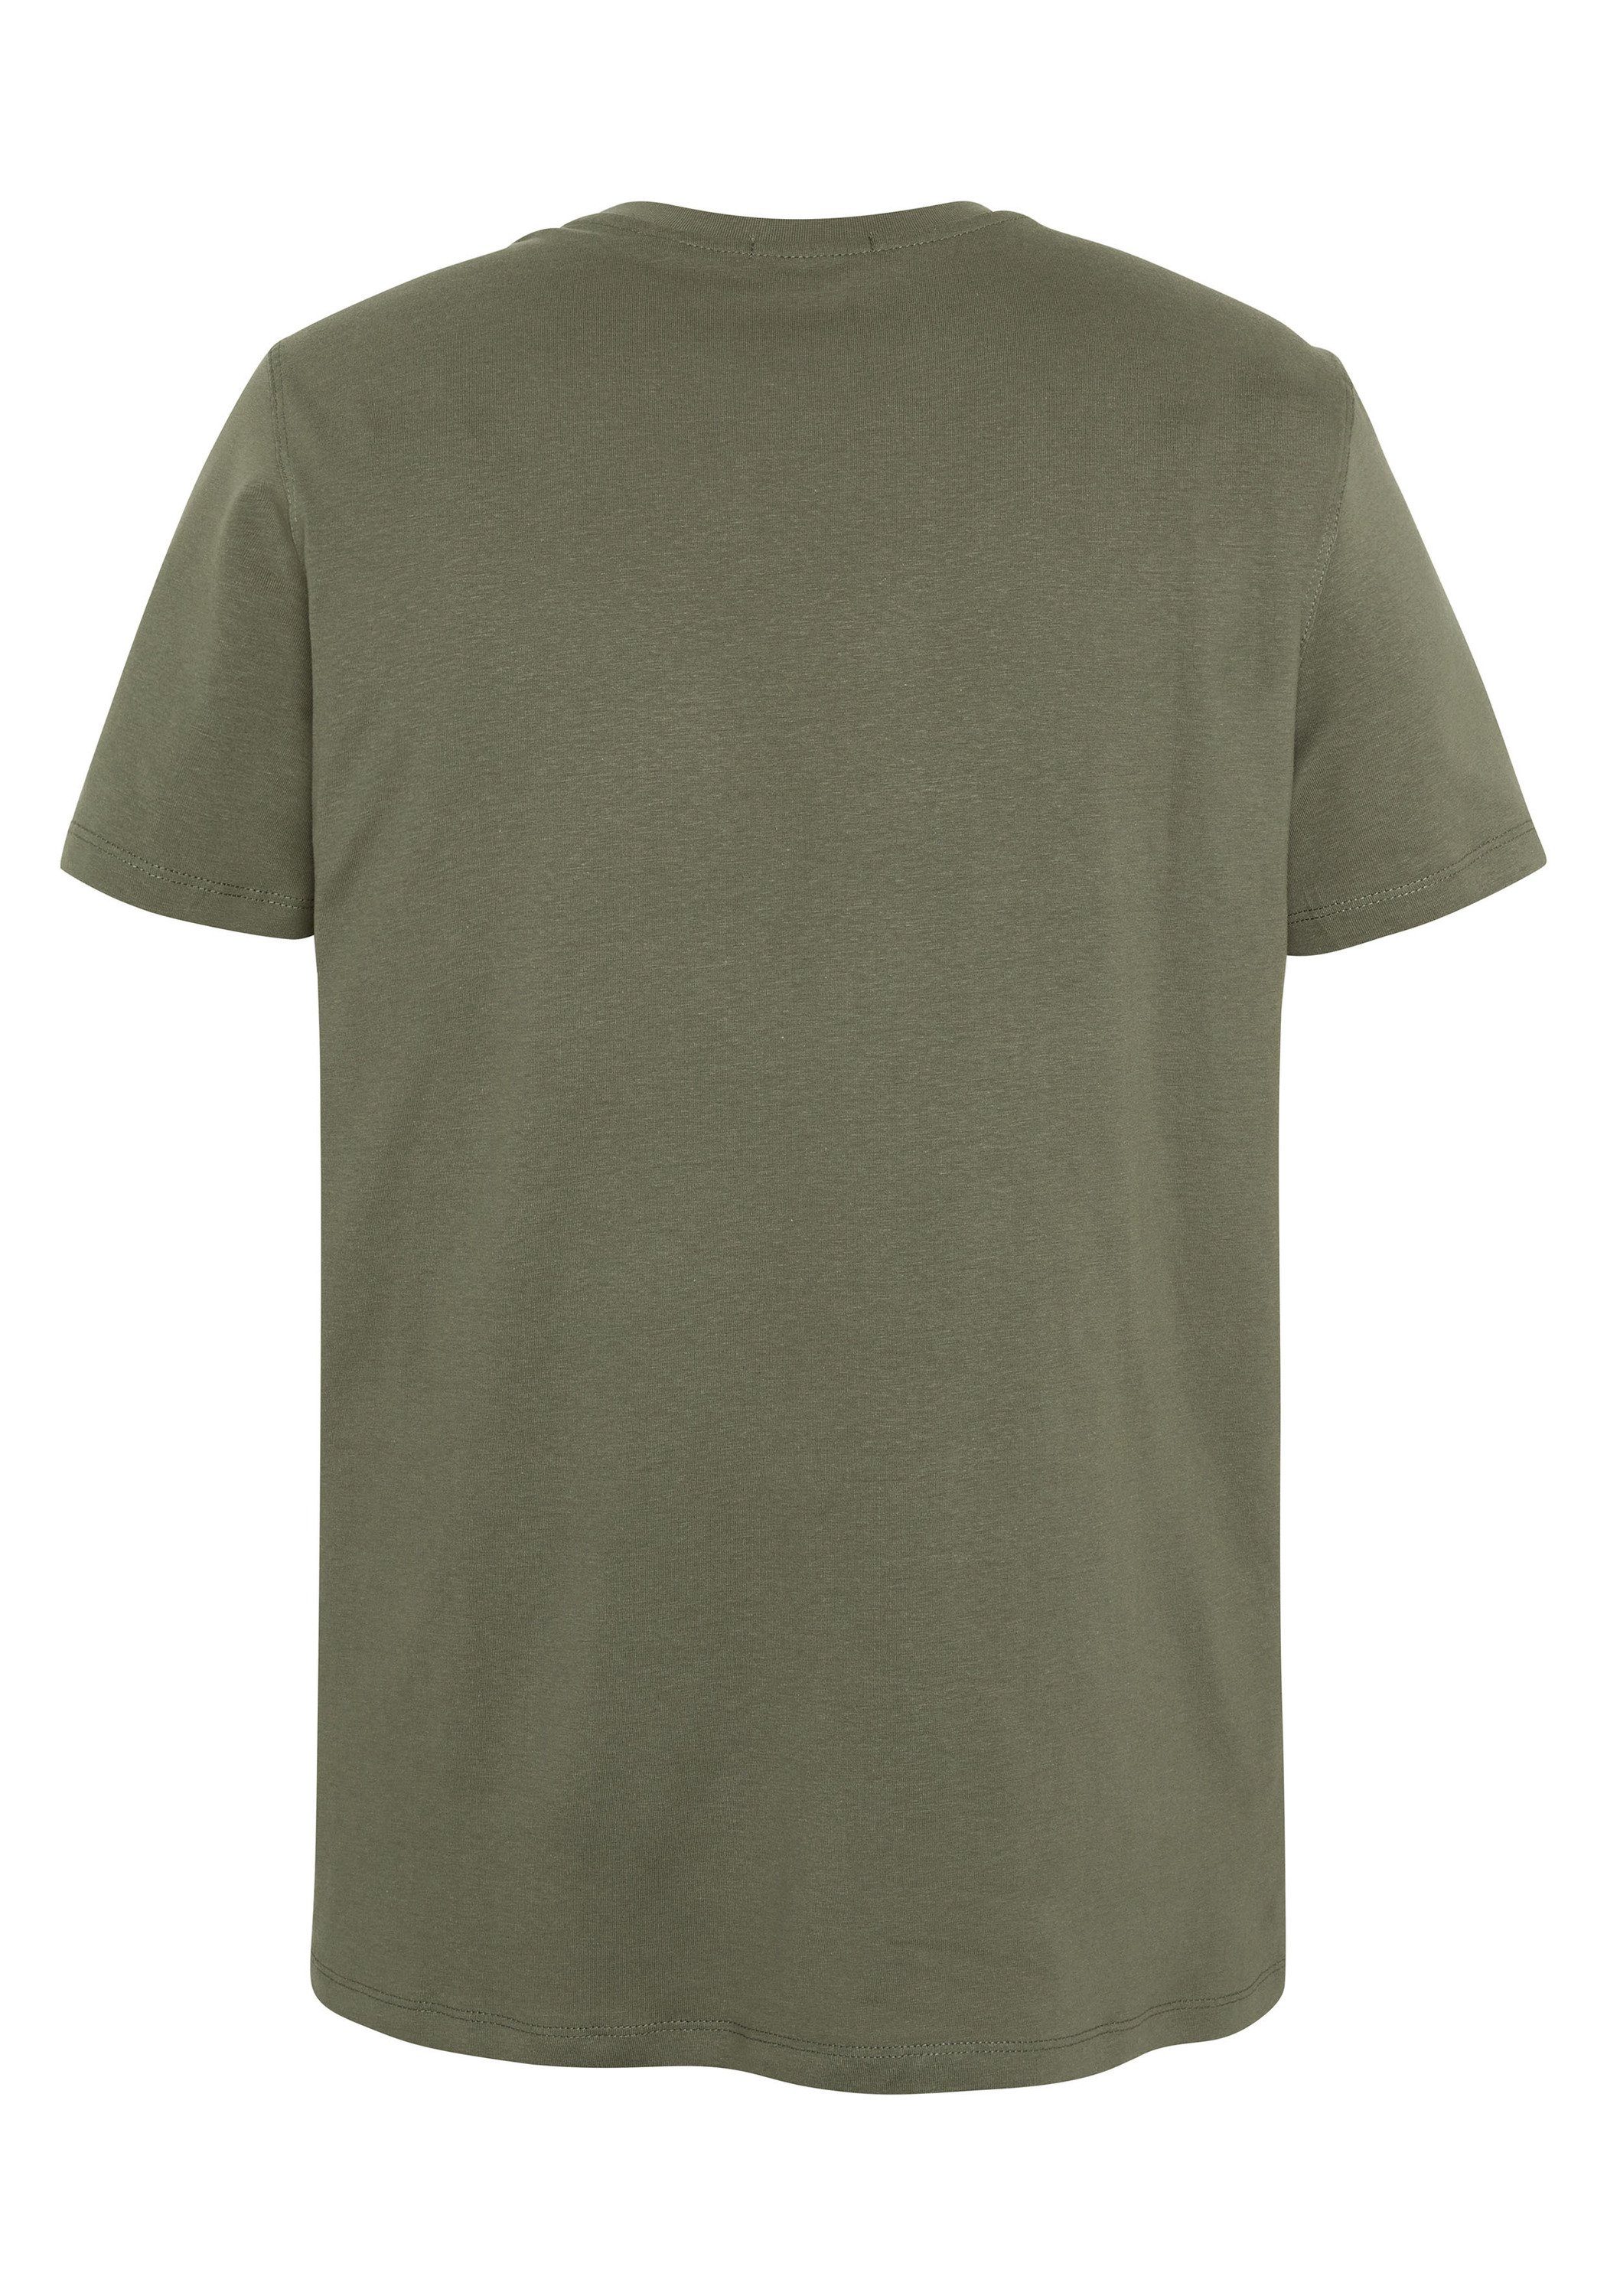 Chiemsee Print-Shirt T-Shirt mit Label-Schriftzug 18-0515 Olive 1 Dusty